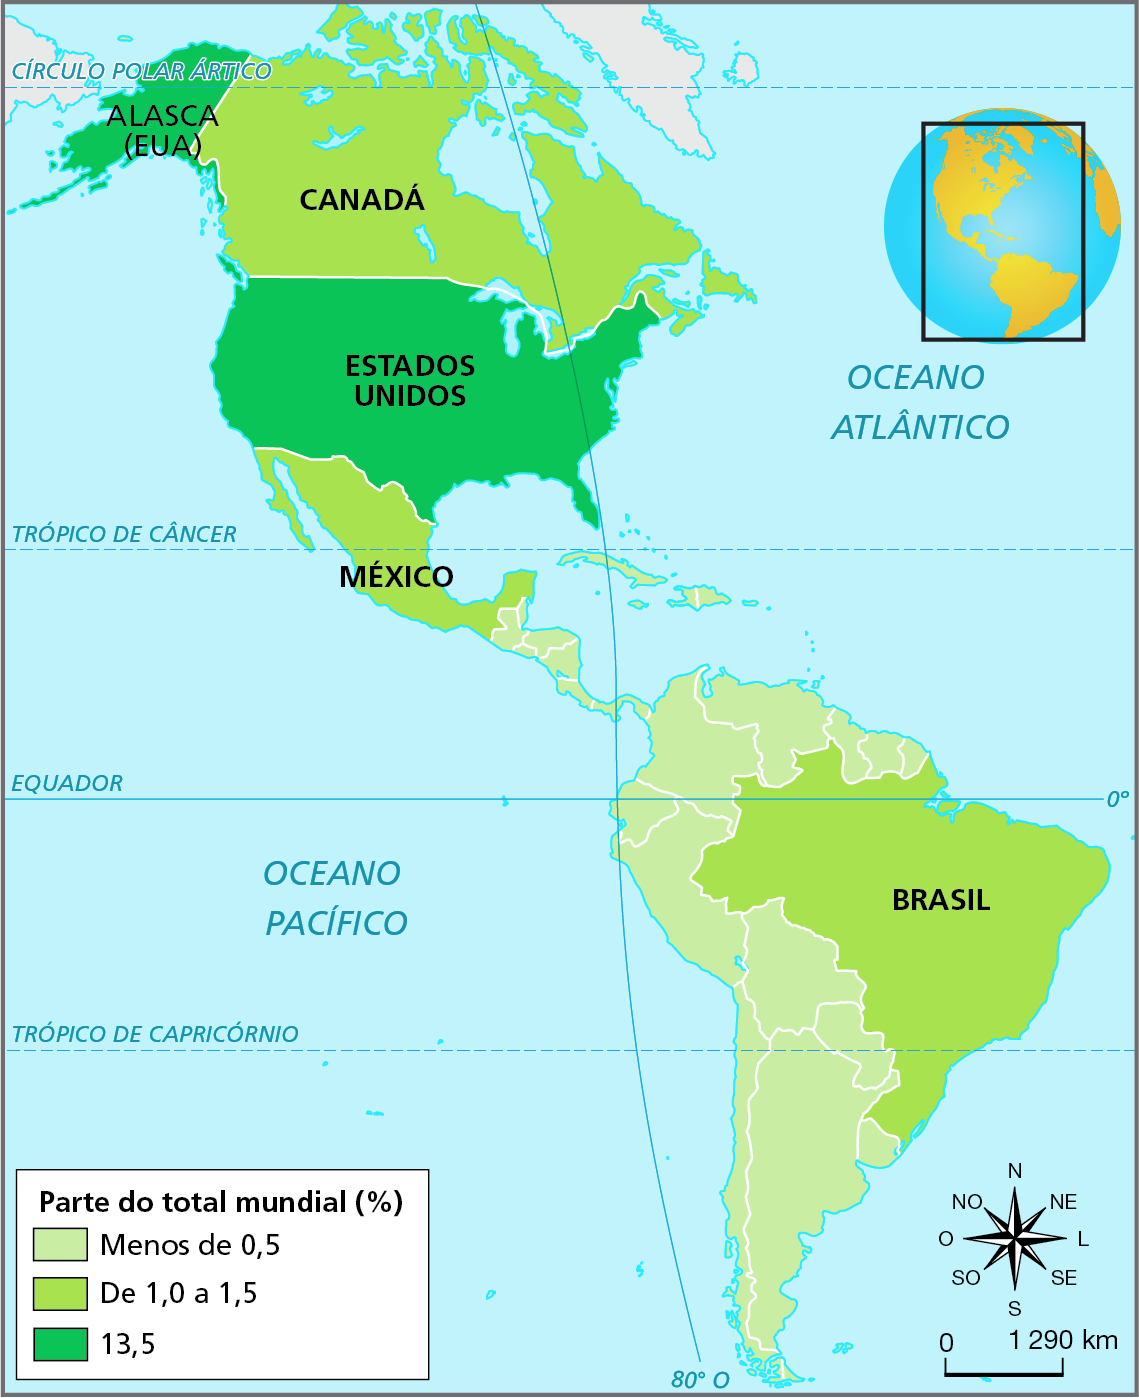 Mapa. América: emissão de dióxido de carbono, 2020. Destaque para a parte de dióxido de carbono emitida pelos países americanos no total emitido mundialmente:
Menos de 0,5%: países da América do Sul, exceto o Brasil; todos os países da América Central (continental e insular); 
De 1,0% a 1,5%: Brasil, México, Canadá. 
13,5%: Estados Unidos. Abaixo, escala de 0 a 1.290 quilômetros e rosa dos ventos.